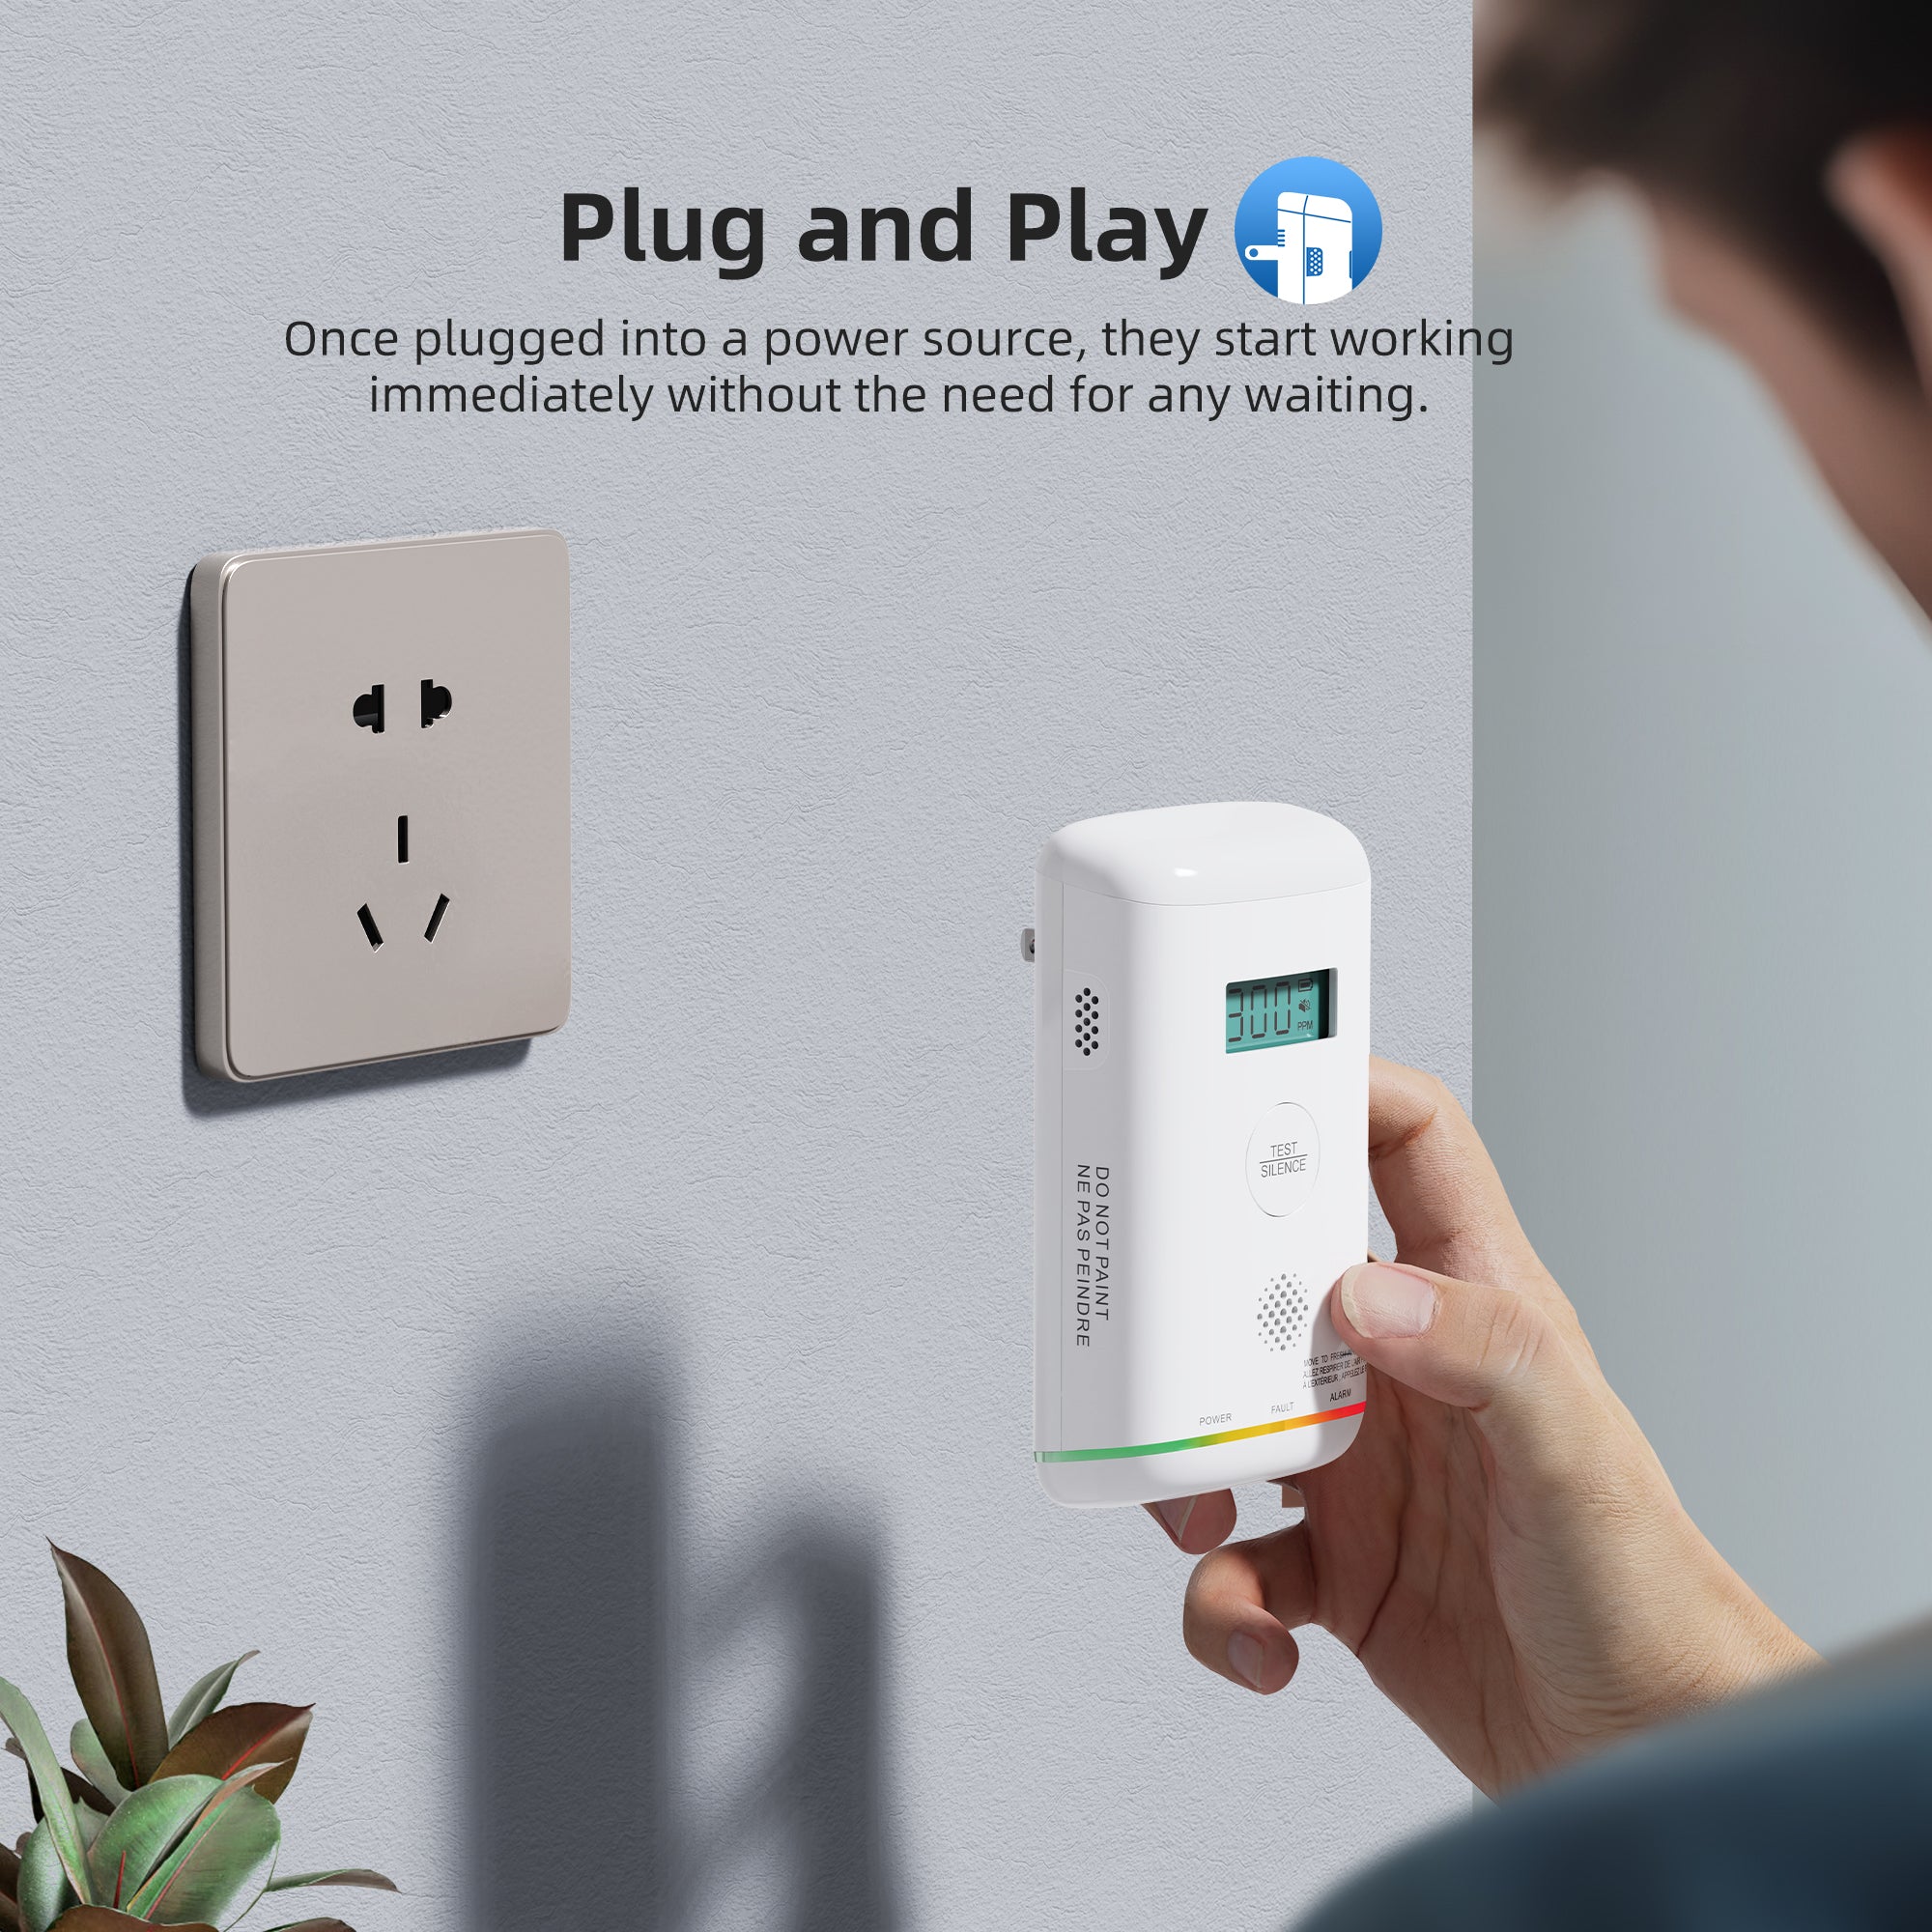 GS845A-H01 AC Powered Plug-in Carbon Monoxide Alarm